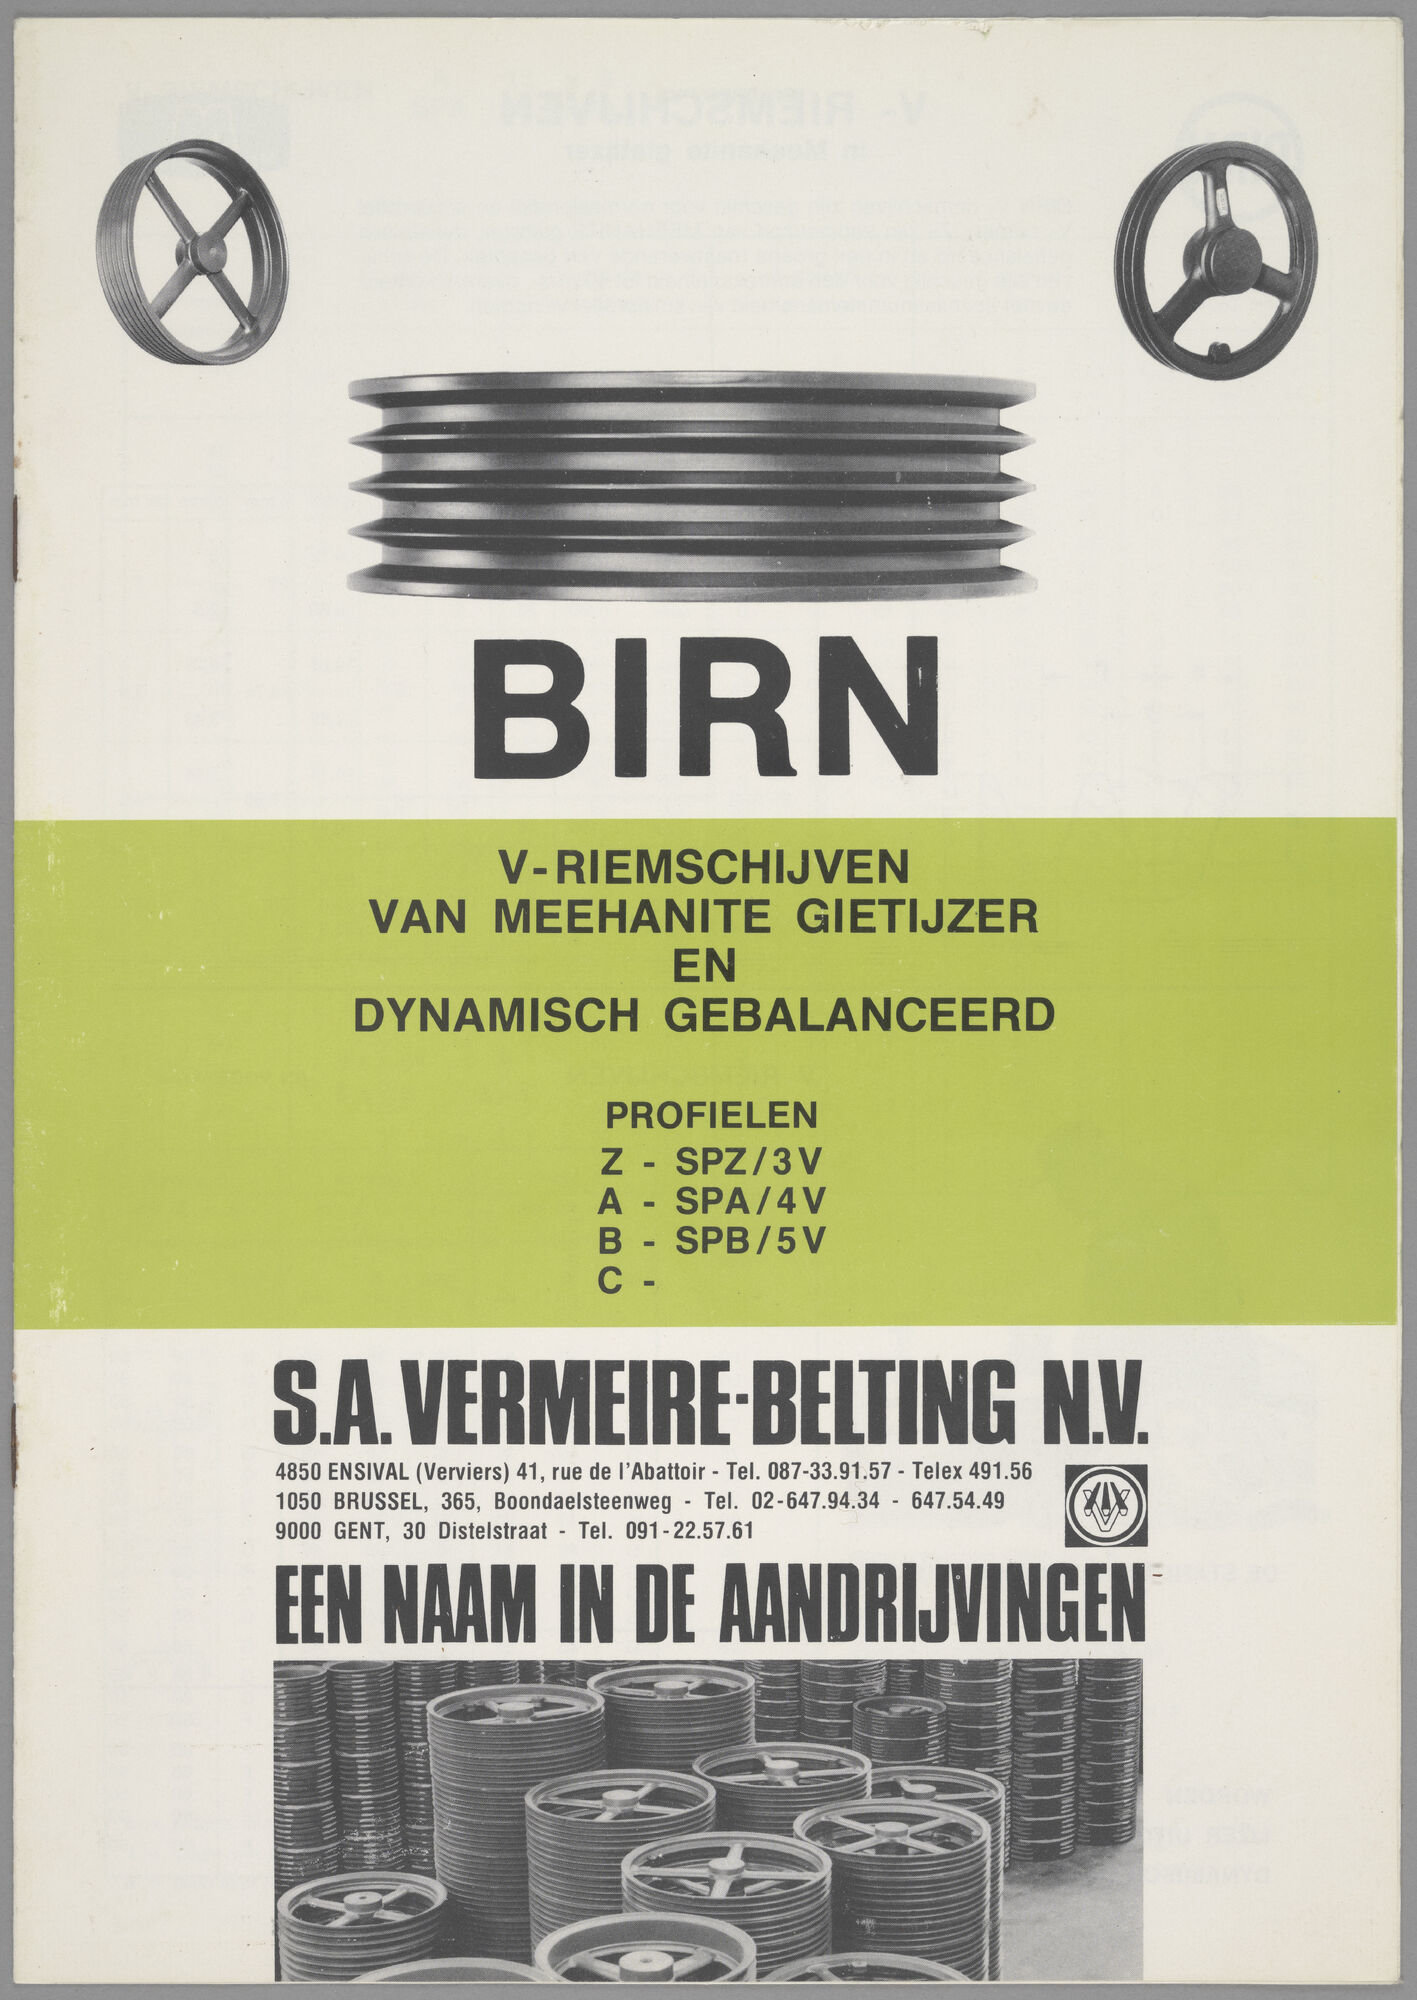 Productbrochure met V-riemschijven van het merk Birn